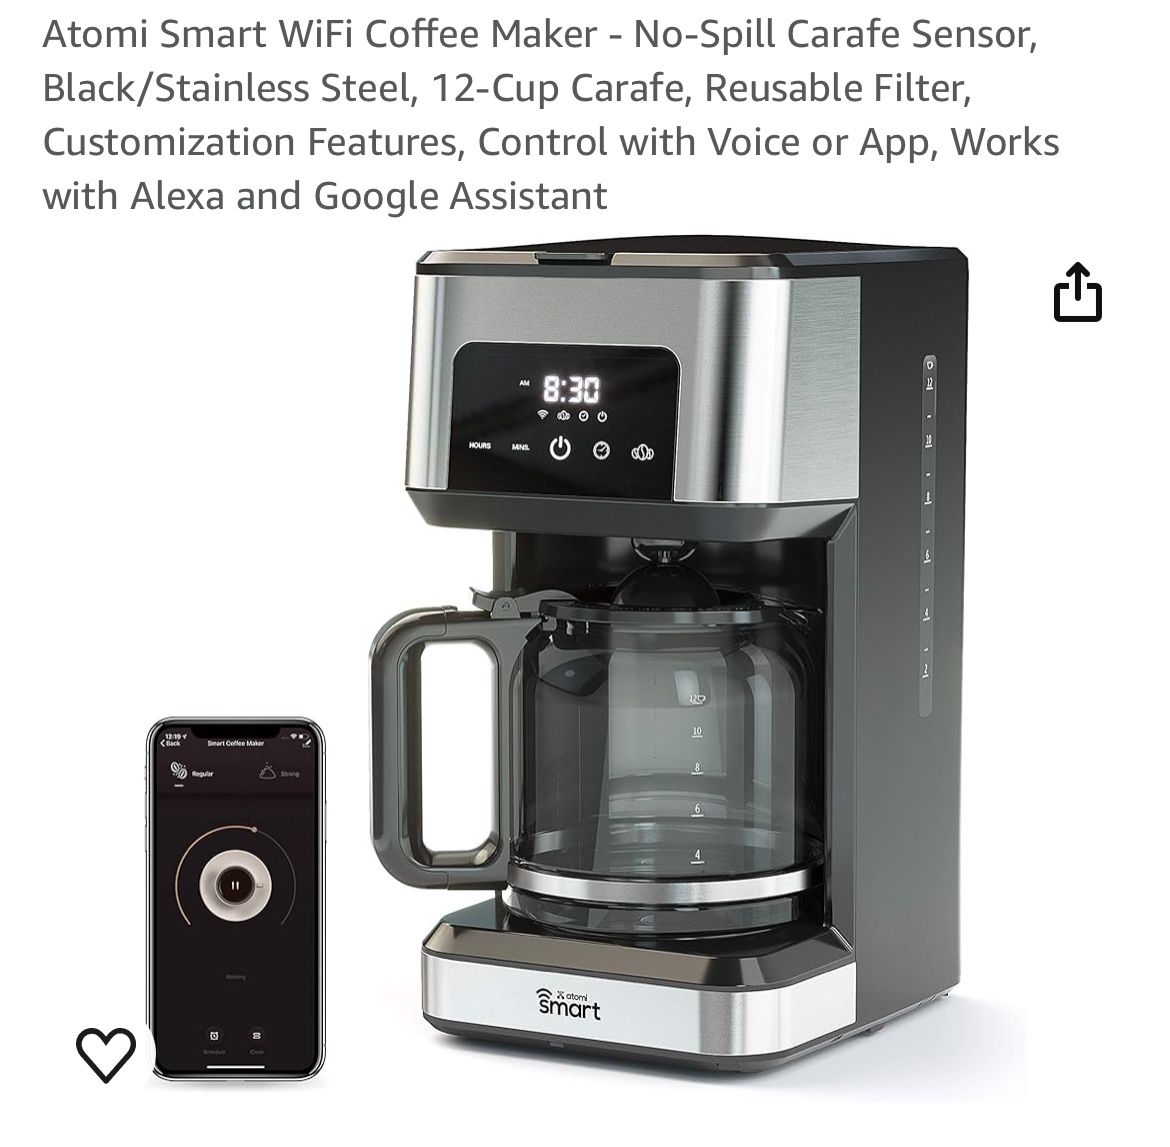 Smart-wifi Coffee Maker 